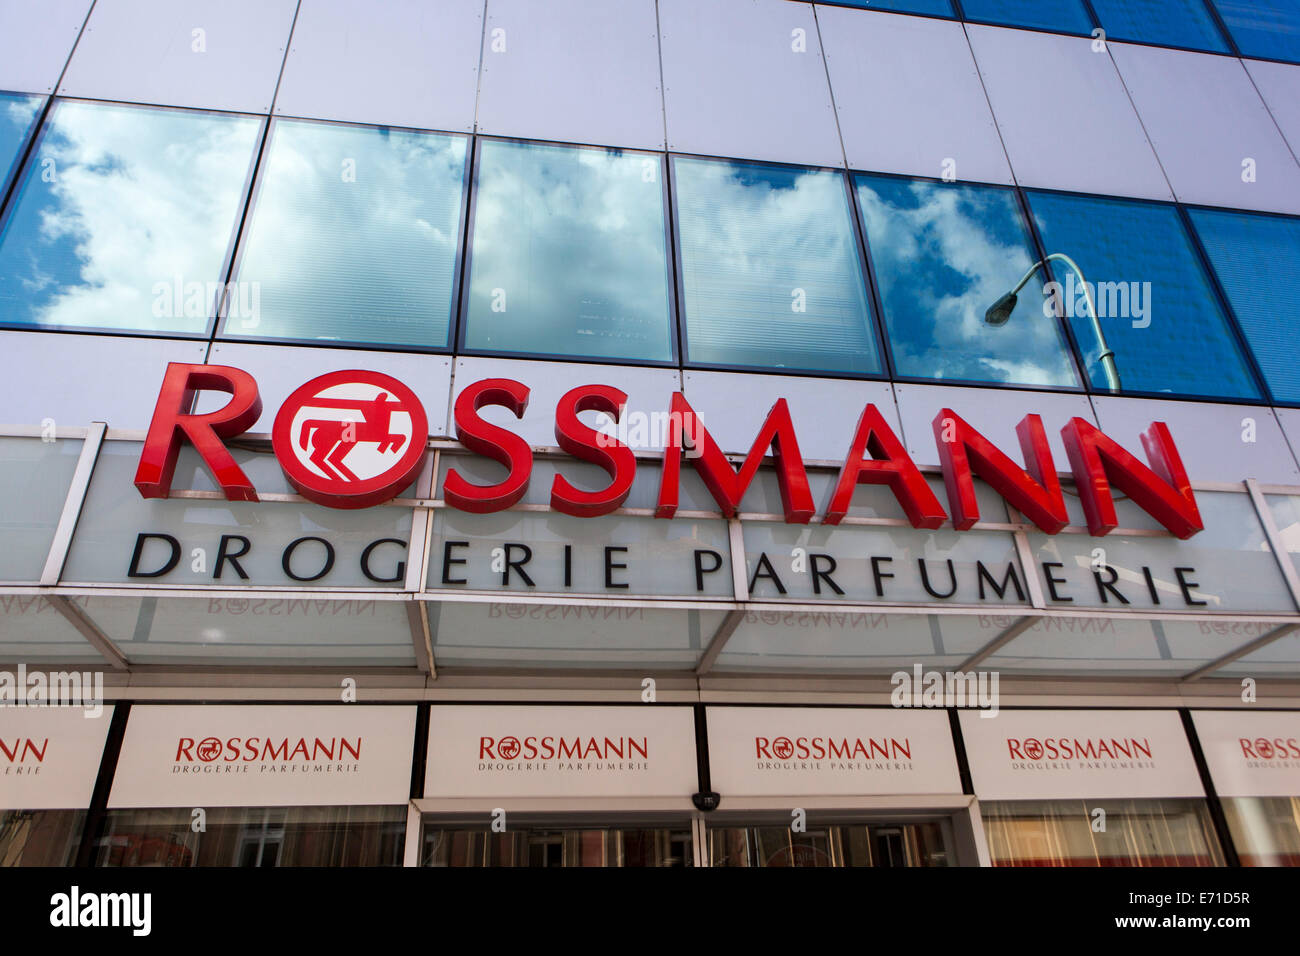 Rossmann Parfümerie logo Zeichen Prag Stockfotografie - Alamy